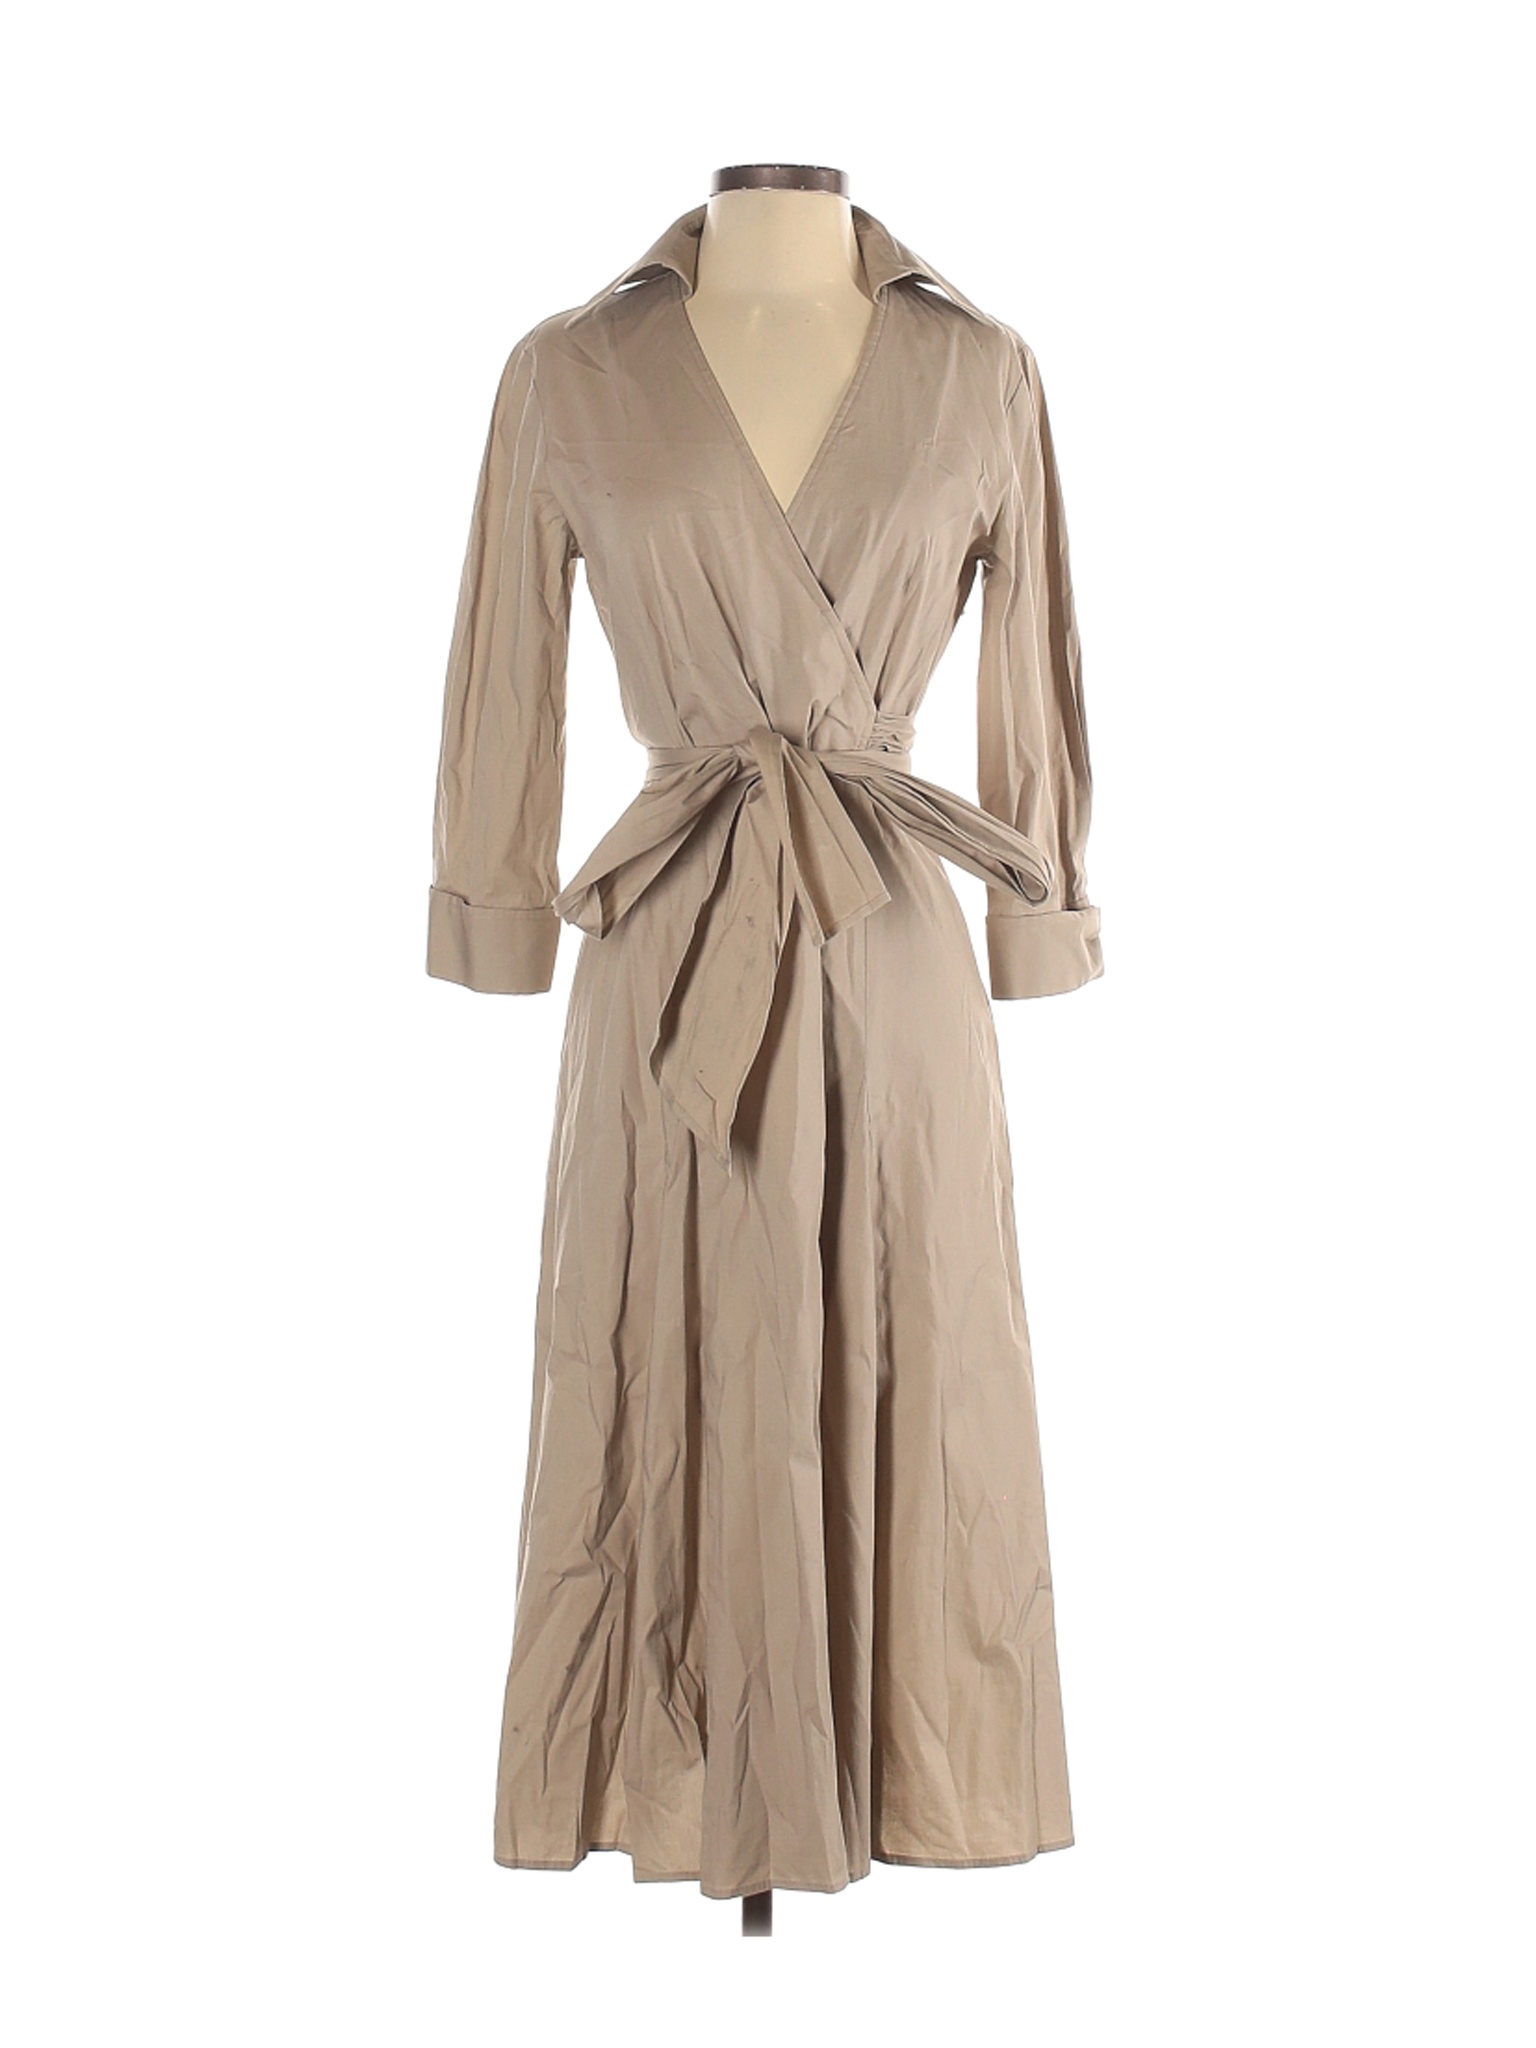 Spiegel Women Brown Casual Dress 4 | eBay